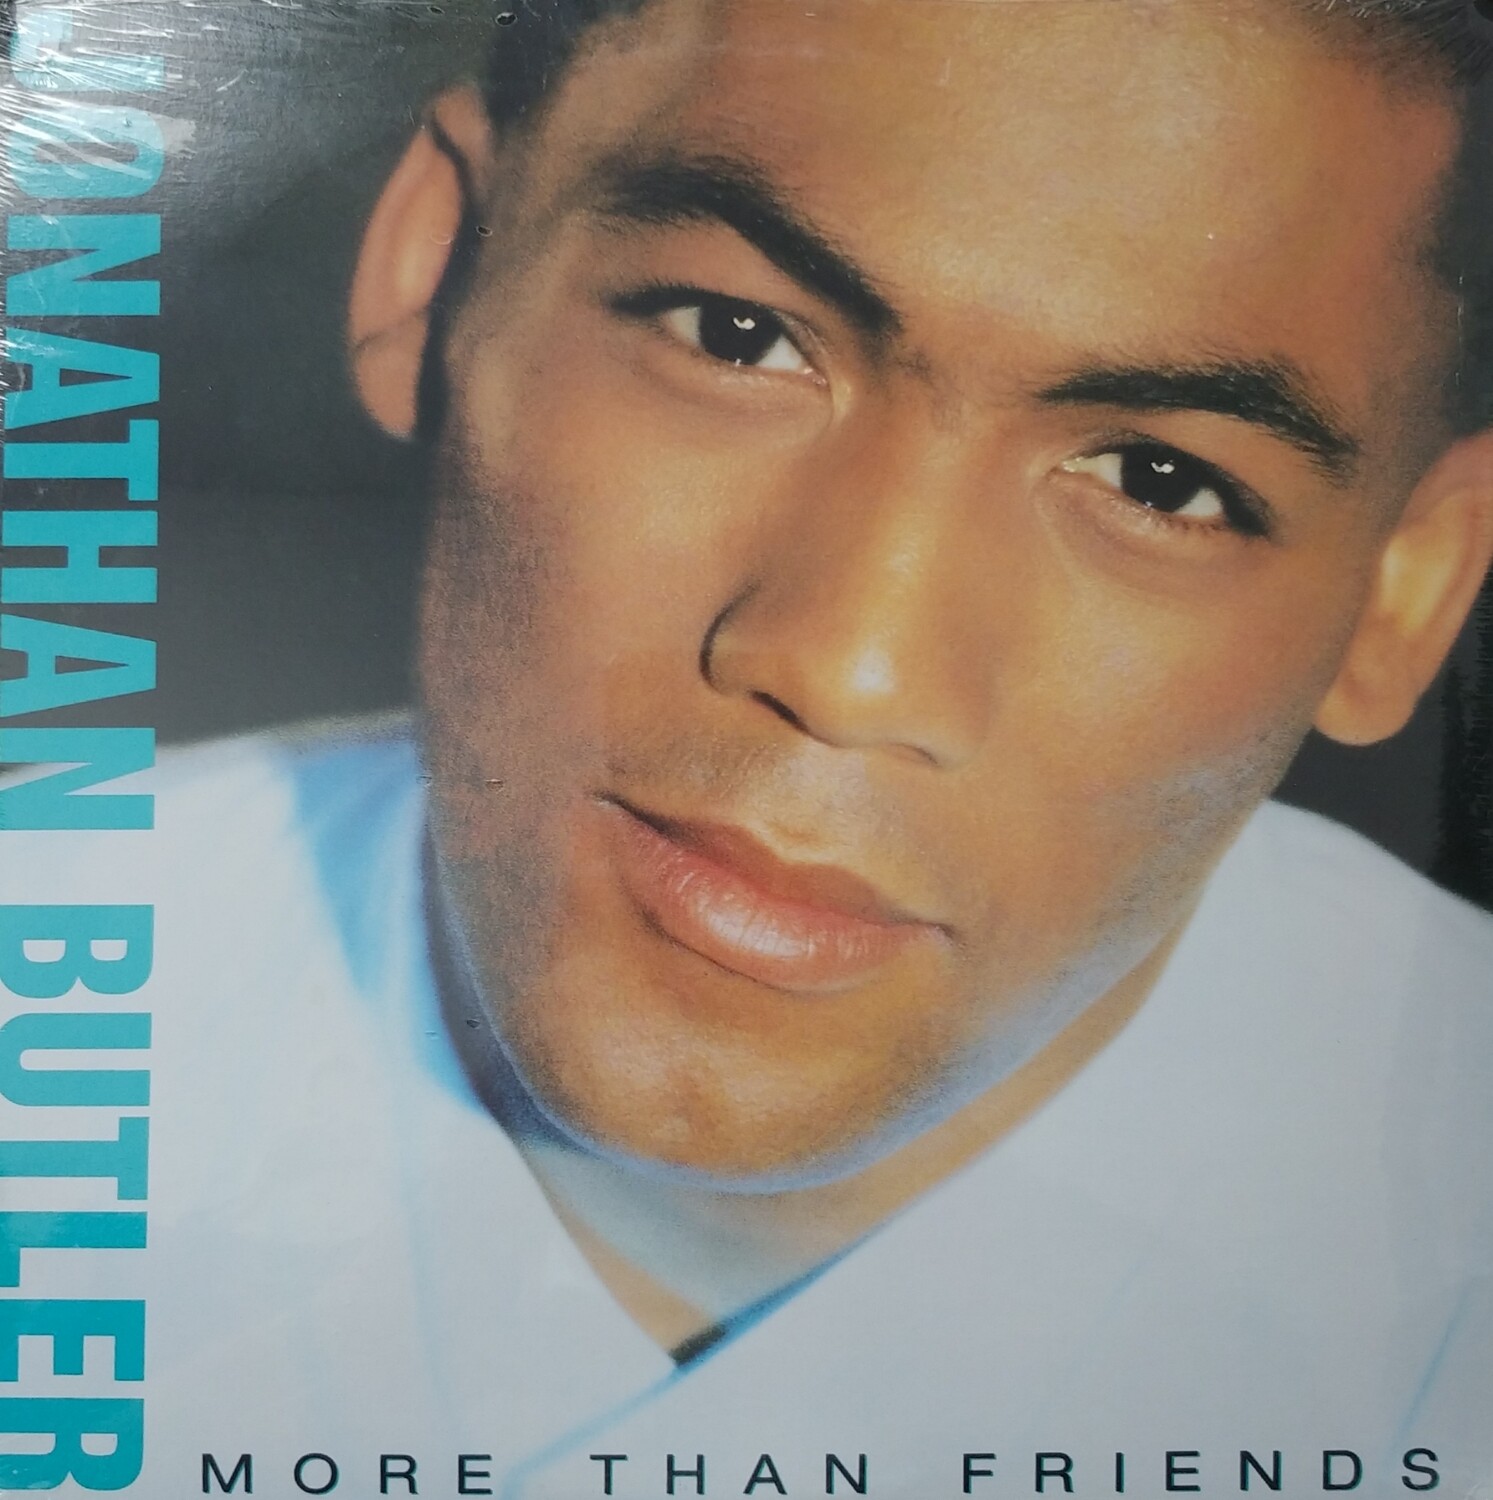 Jonathan Butler - More than friends